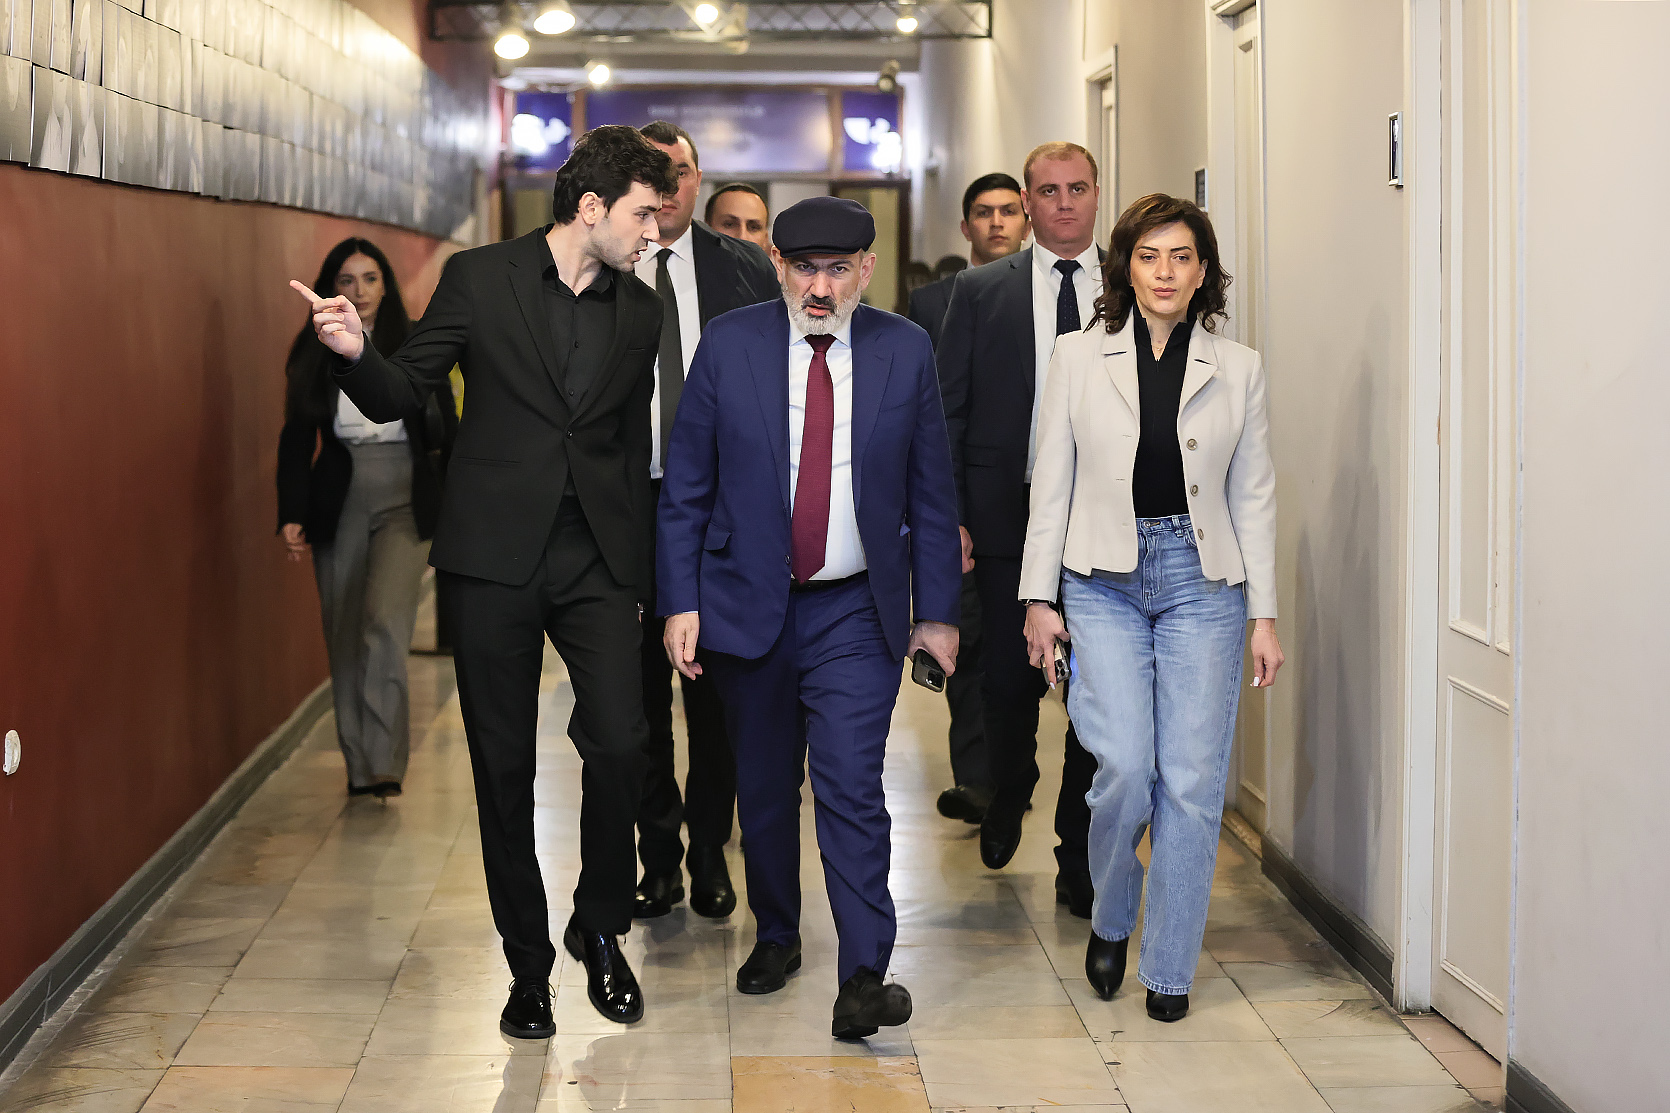 Никол Пашинян открыто проводит свою подрывную деятельность против Армении